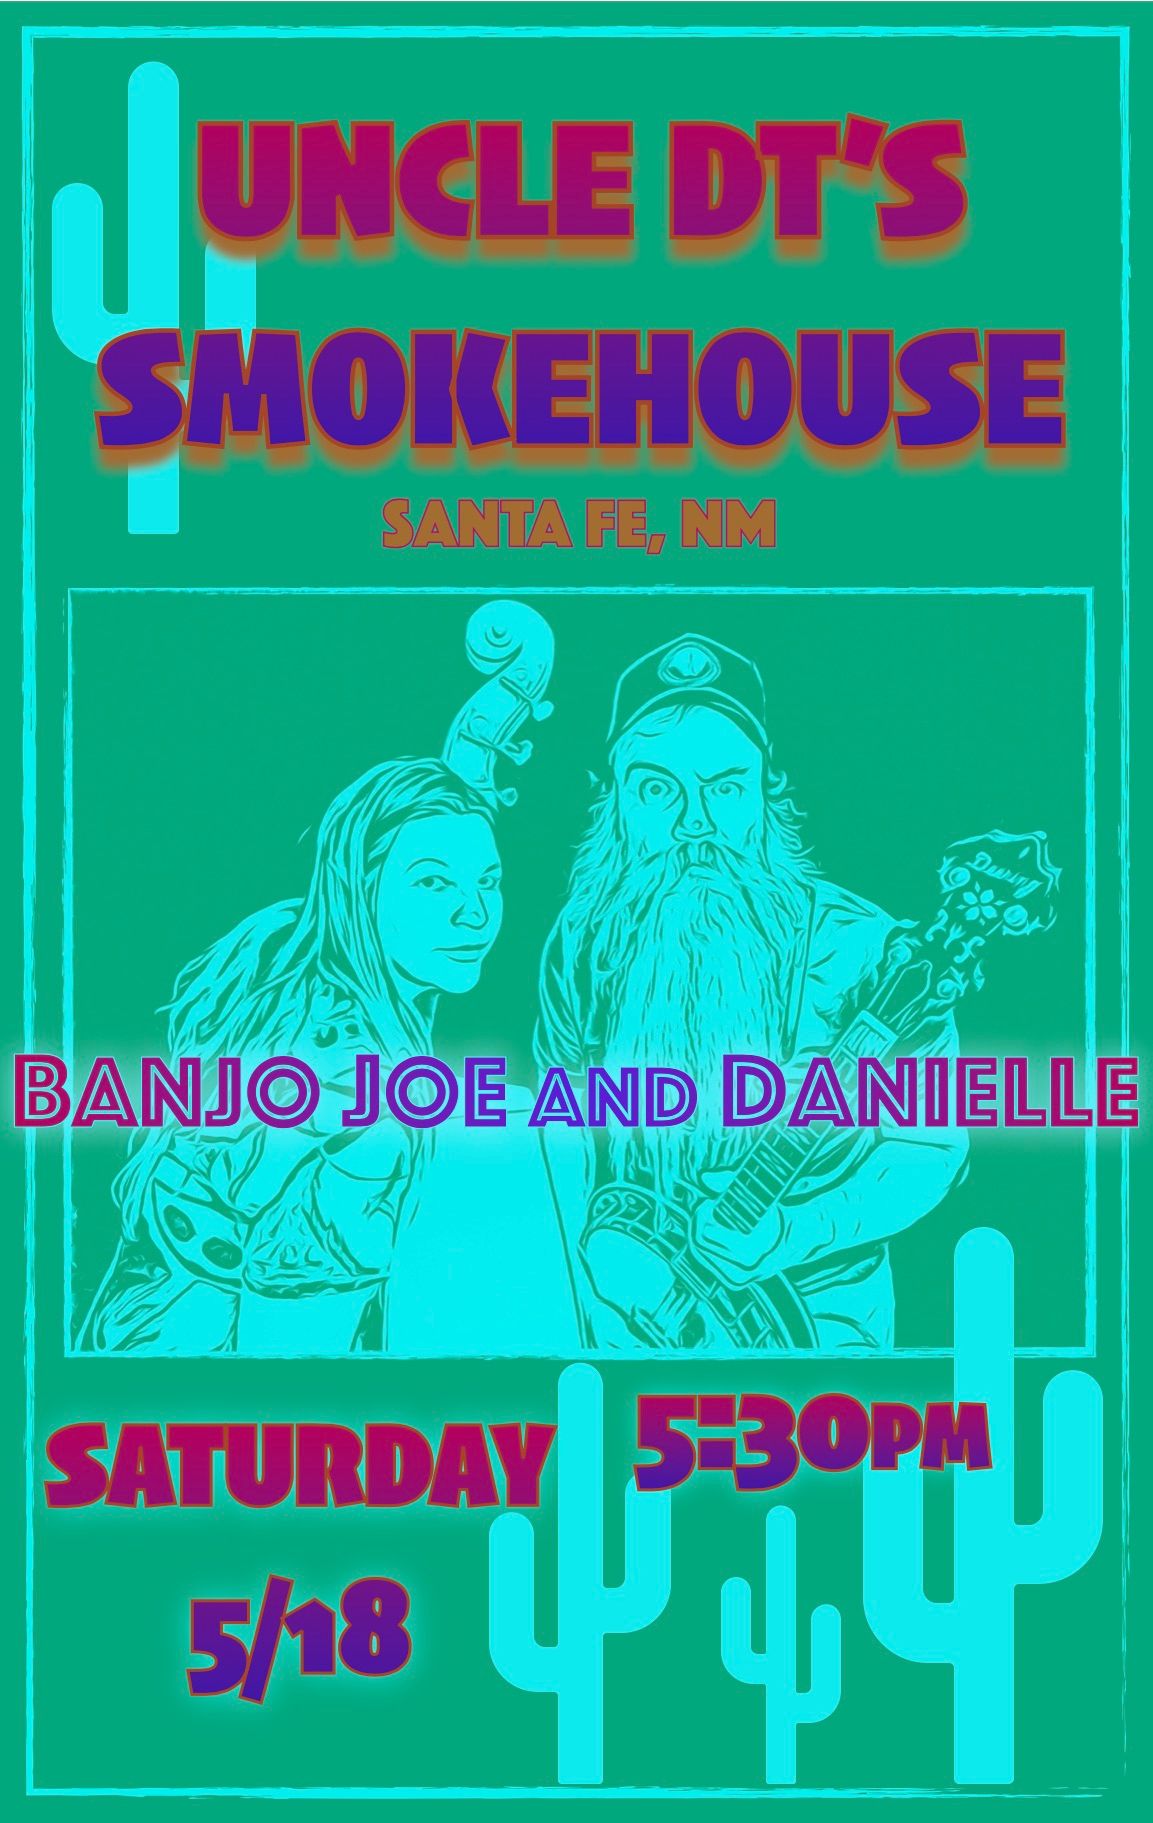 Banjo Joe and Danielle Live at Uncle DT's Smokehouse | Santa Fe, NM